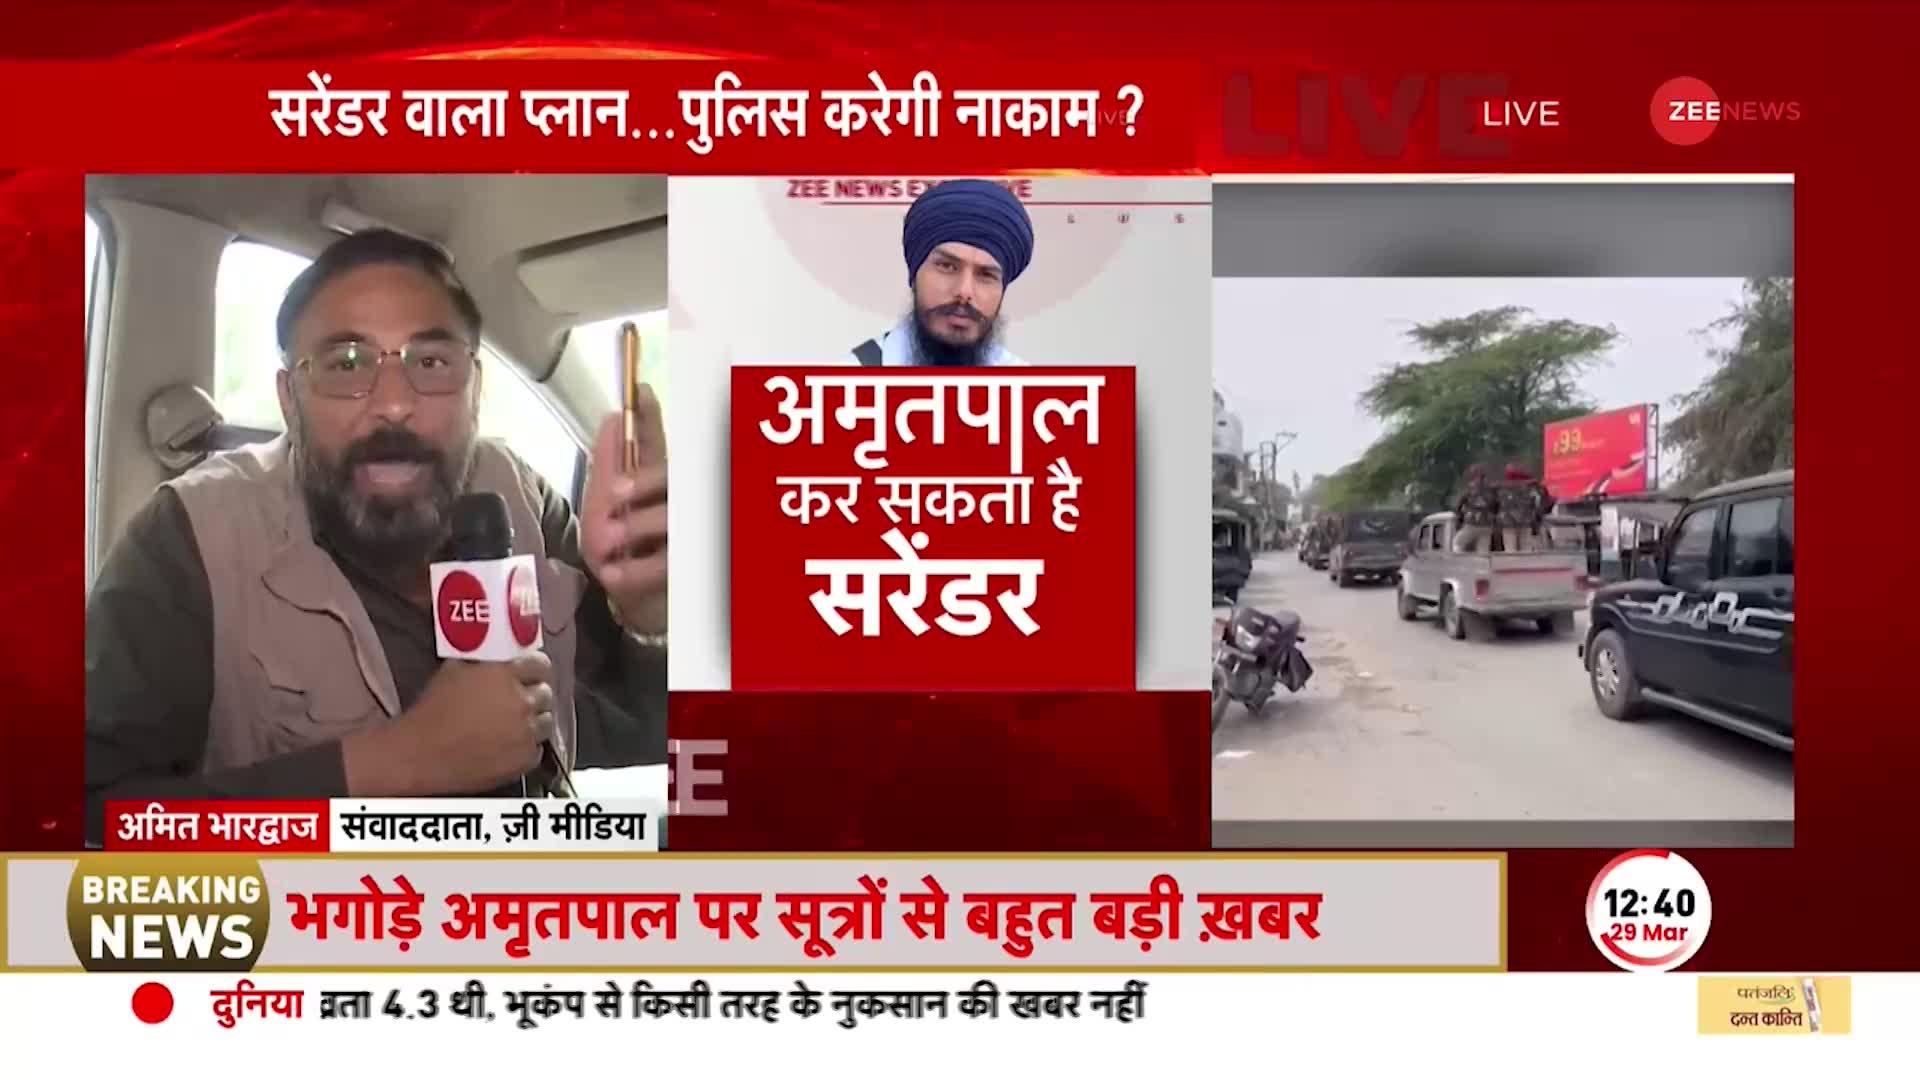 BREAKING NEWS: Amritpal Singh ने गिरफ्तारी को लेकर Punjab Police के सामने रखी तीन बड़ी शर्तें